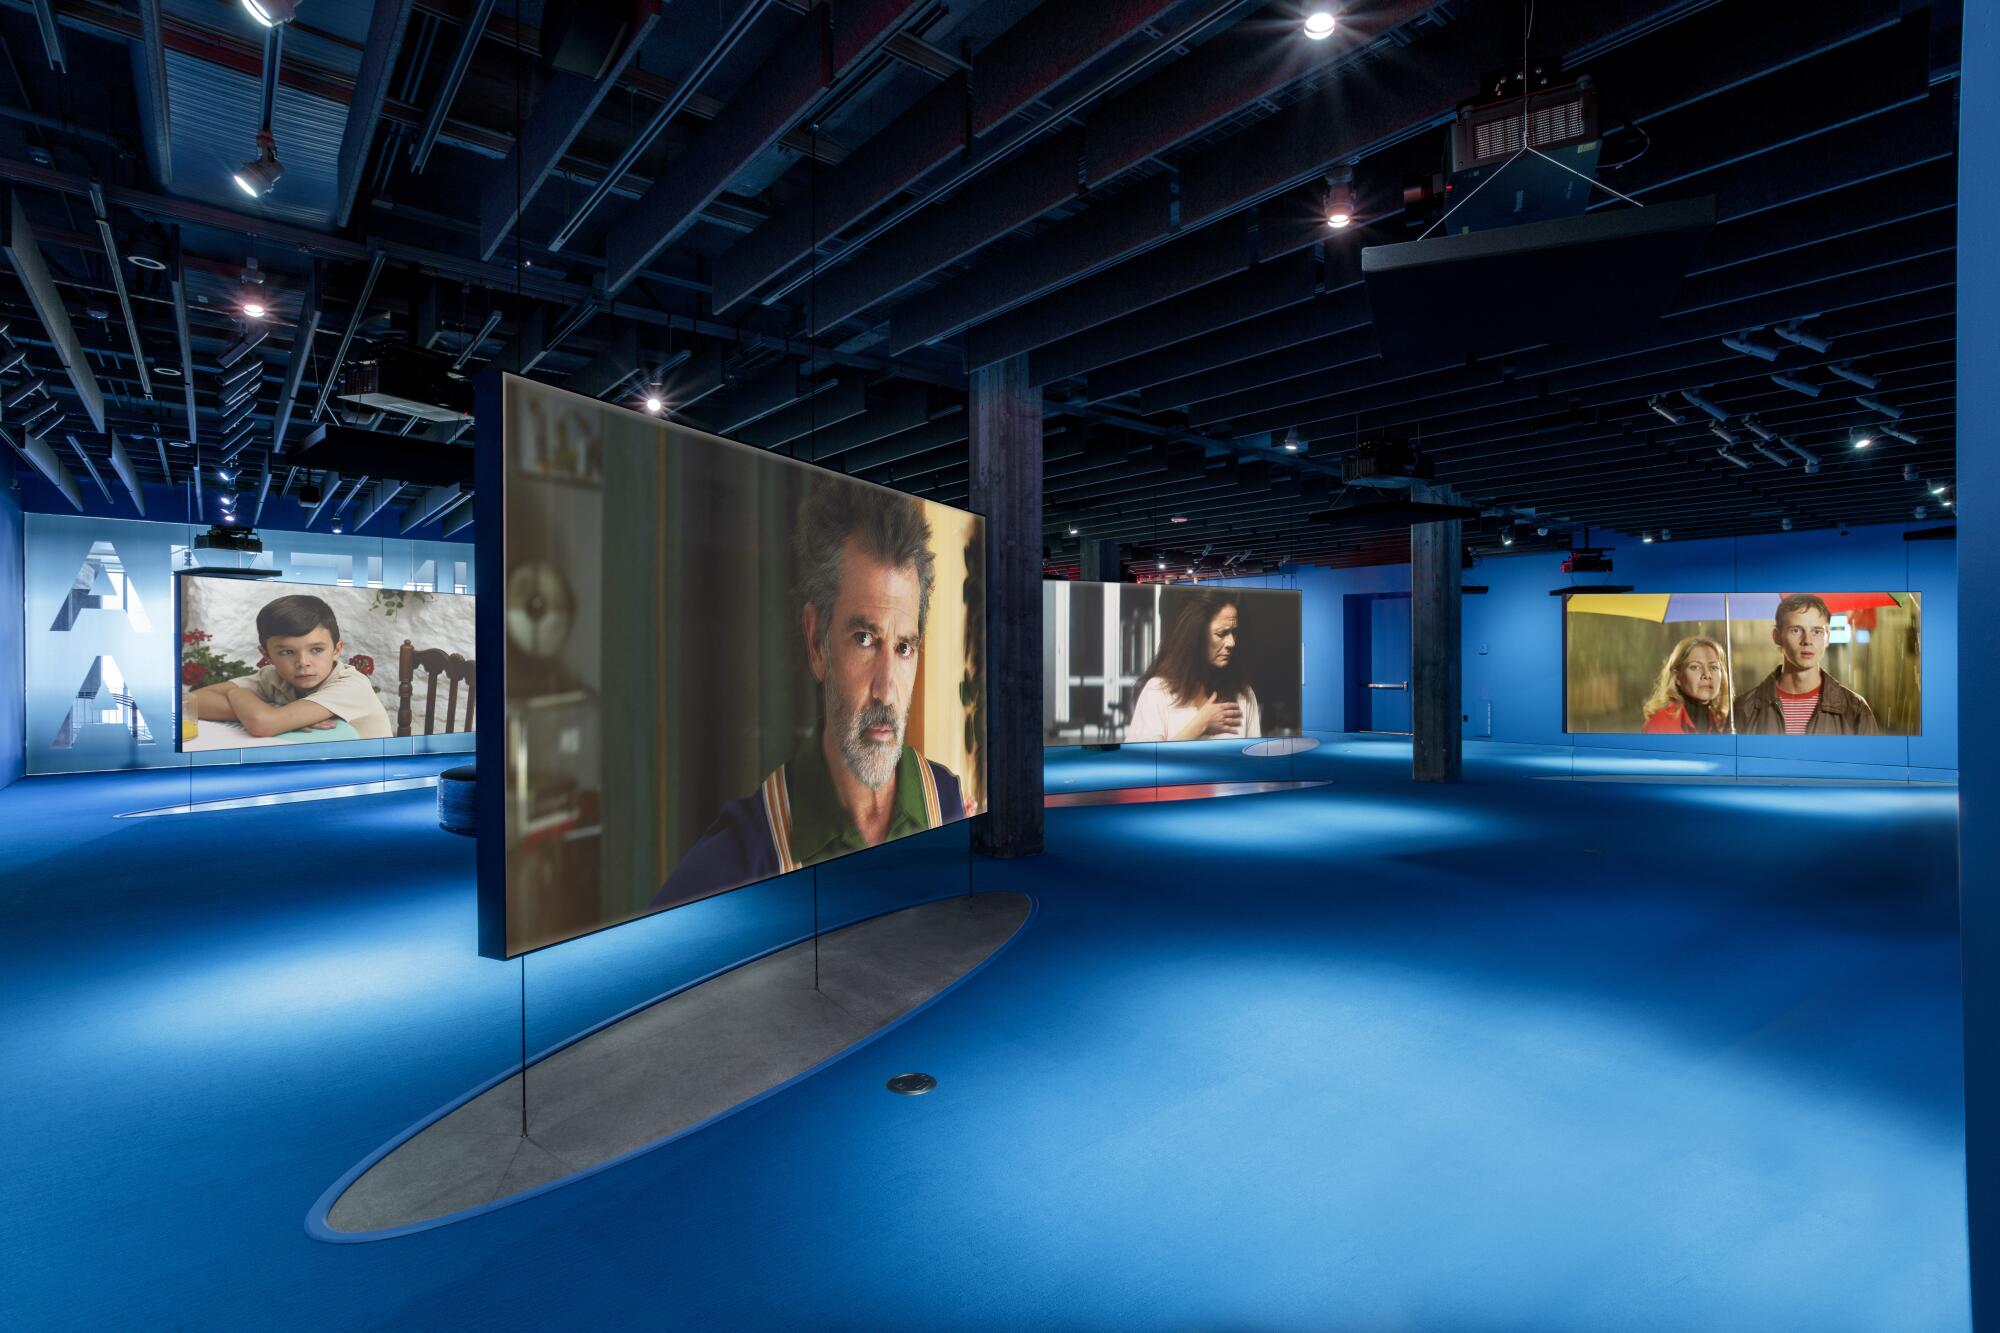 El cineasta español Pedro Almodóvar tiene una instalación creada por él mismo.